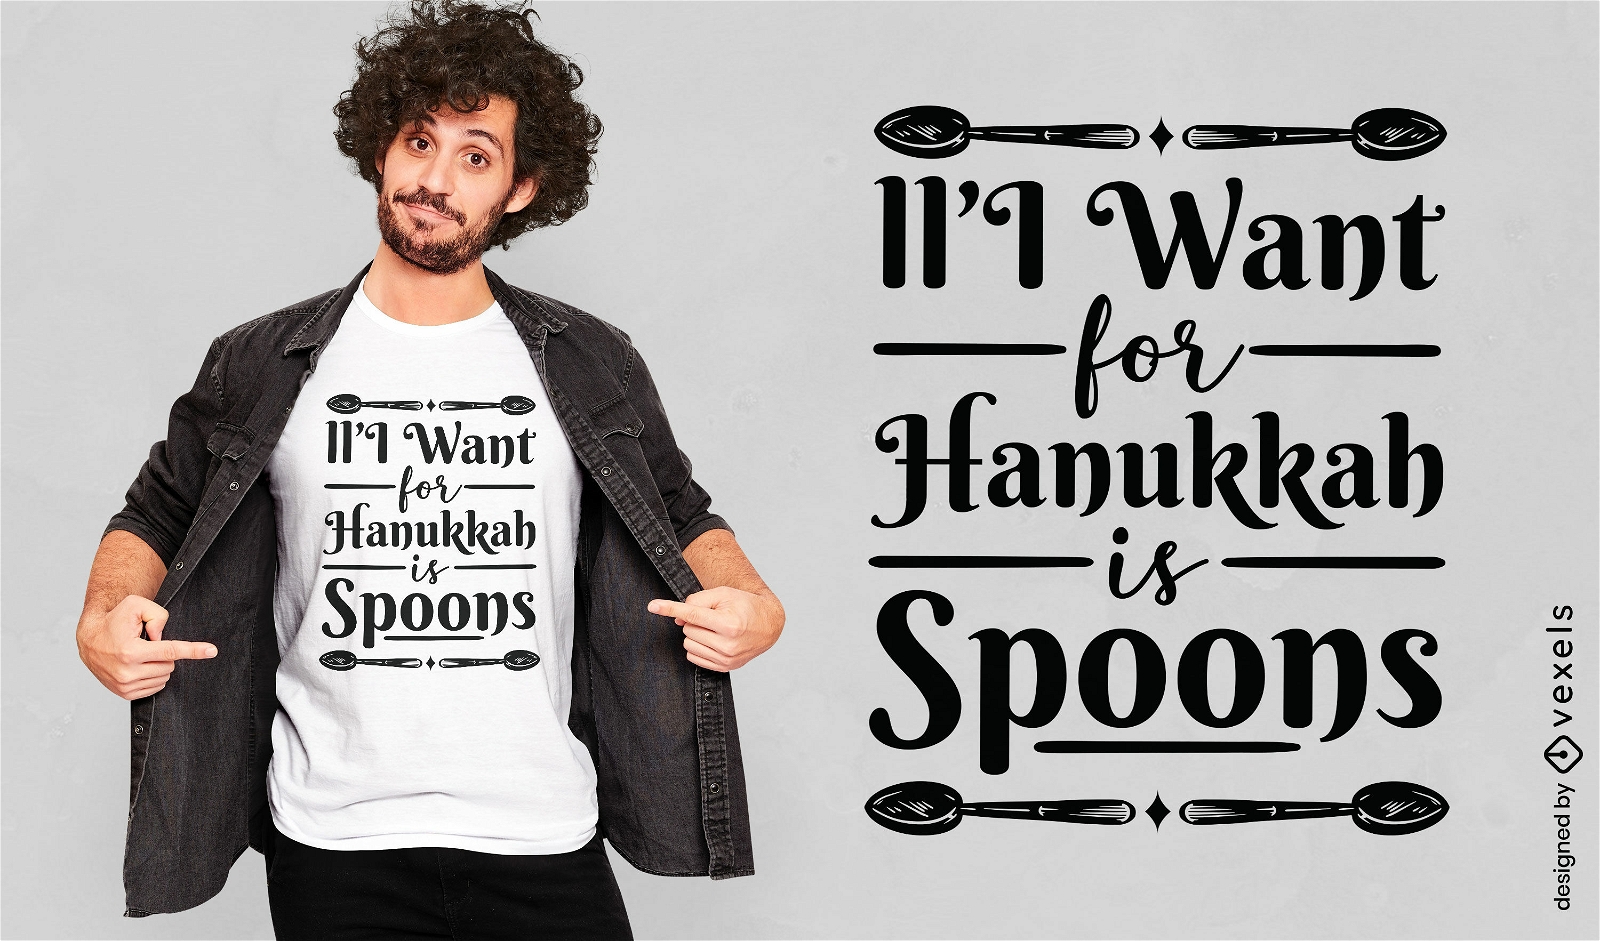 Dise?o de camiseta de cucharas para Hanukkah